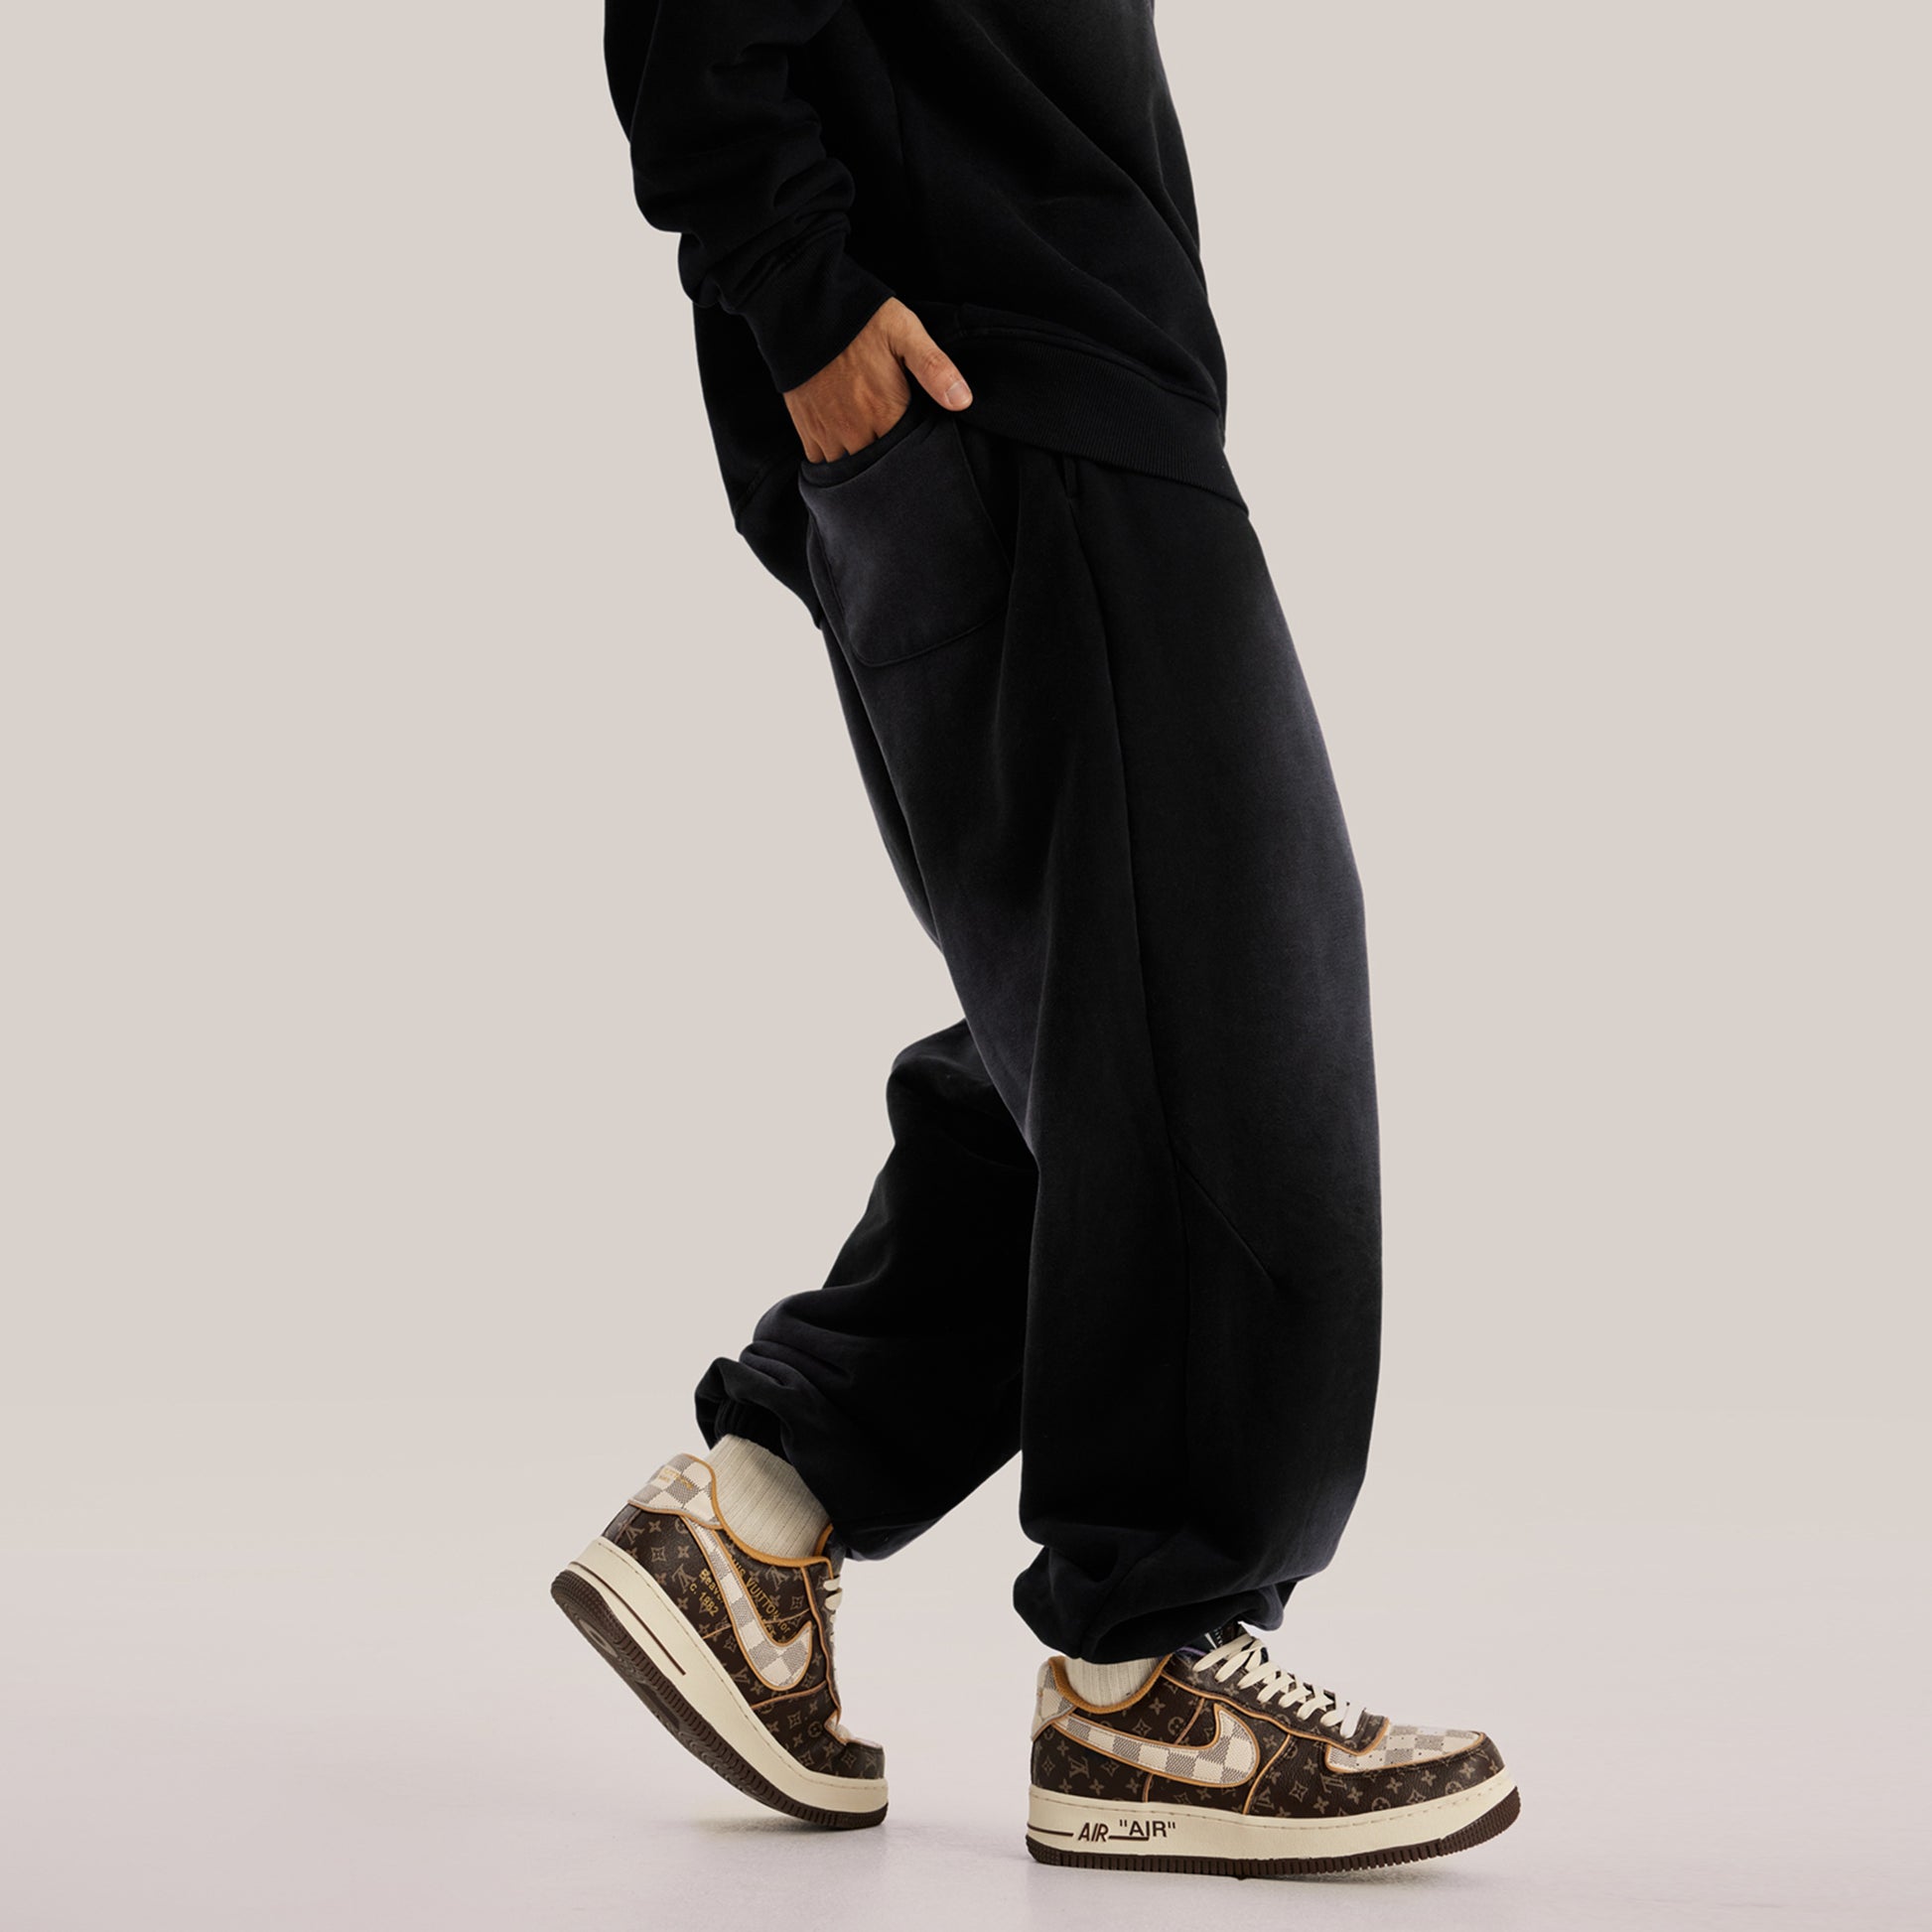 https://aeteriuswear.com/cdn/shop/files/side-luxury-streetwear-black-oversized-pants-baggy-sweatpants.jpg?v=1701030756&width=1946